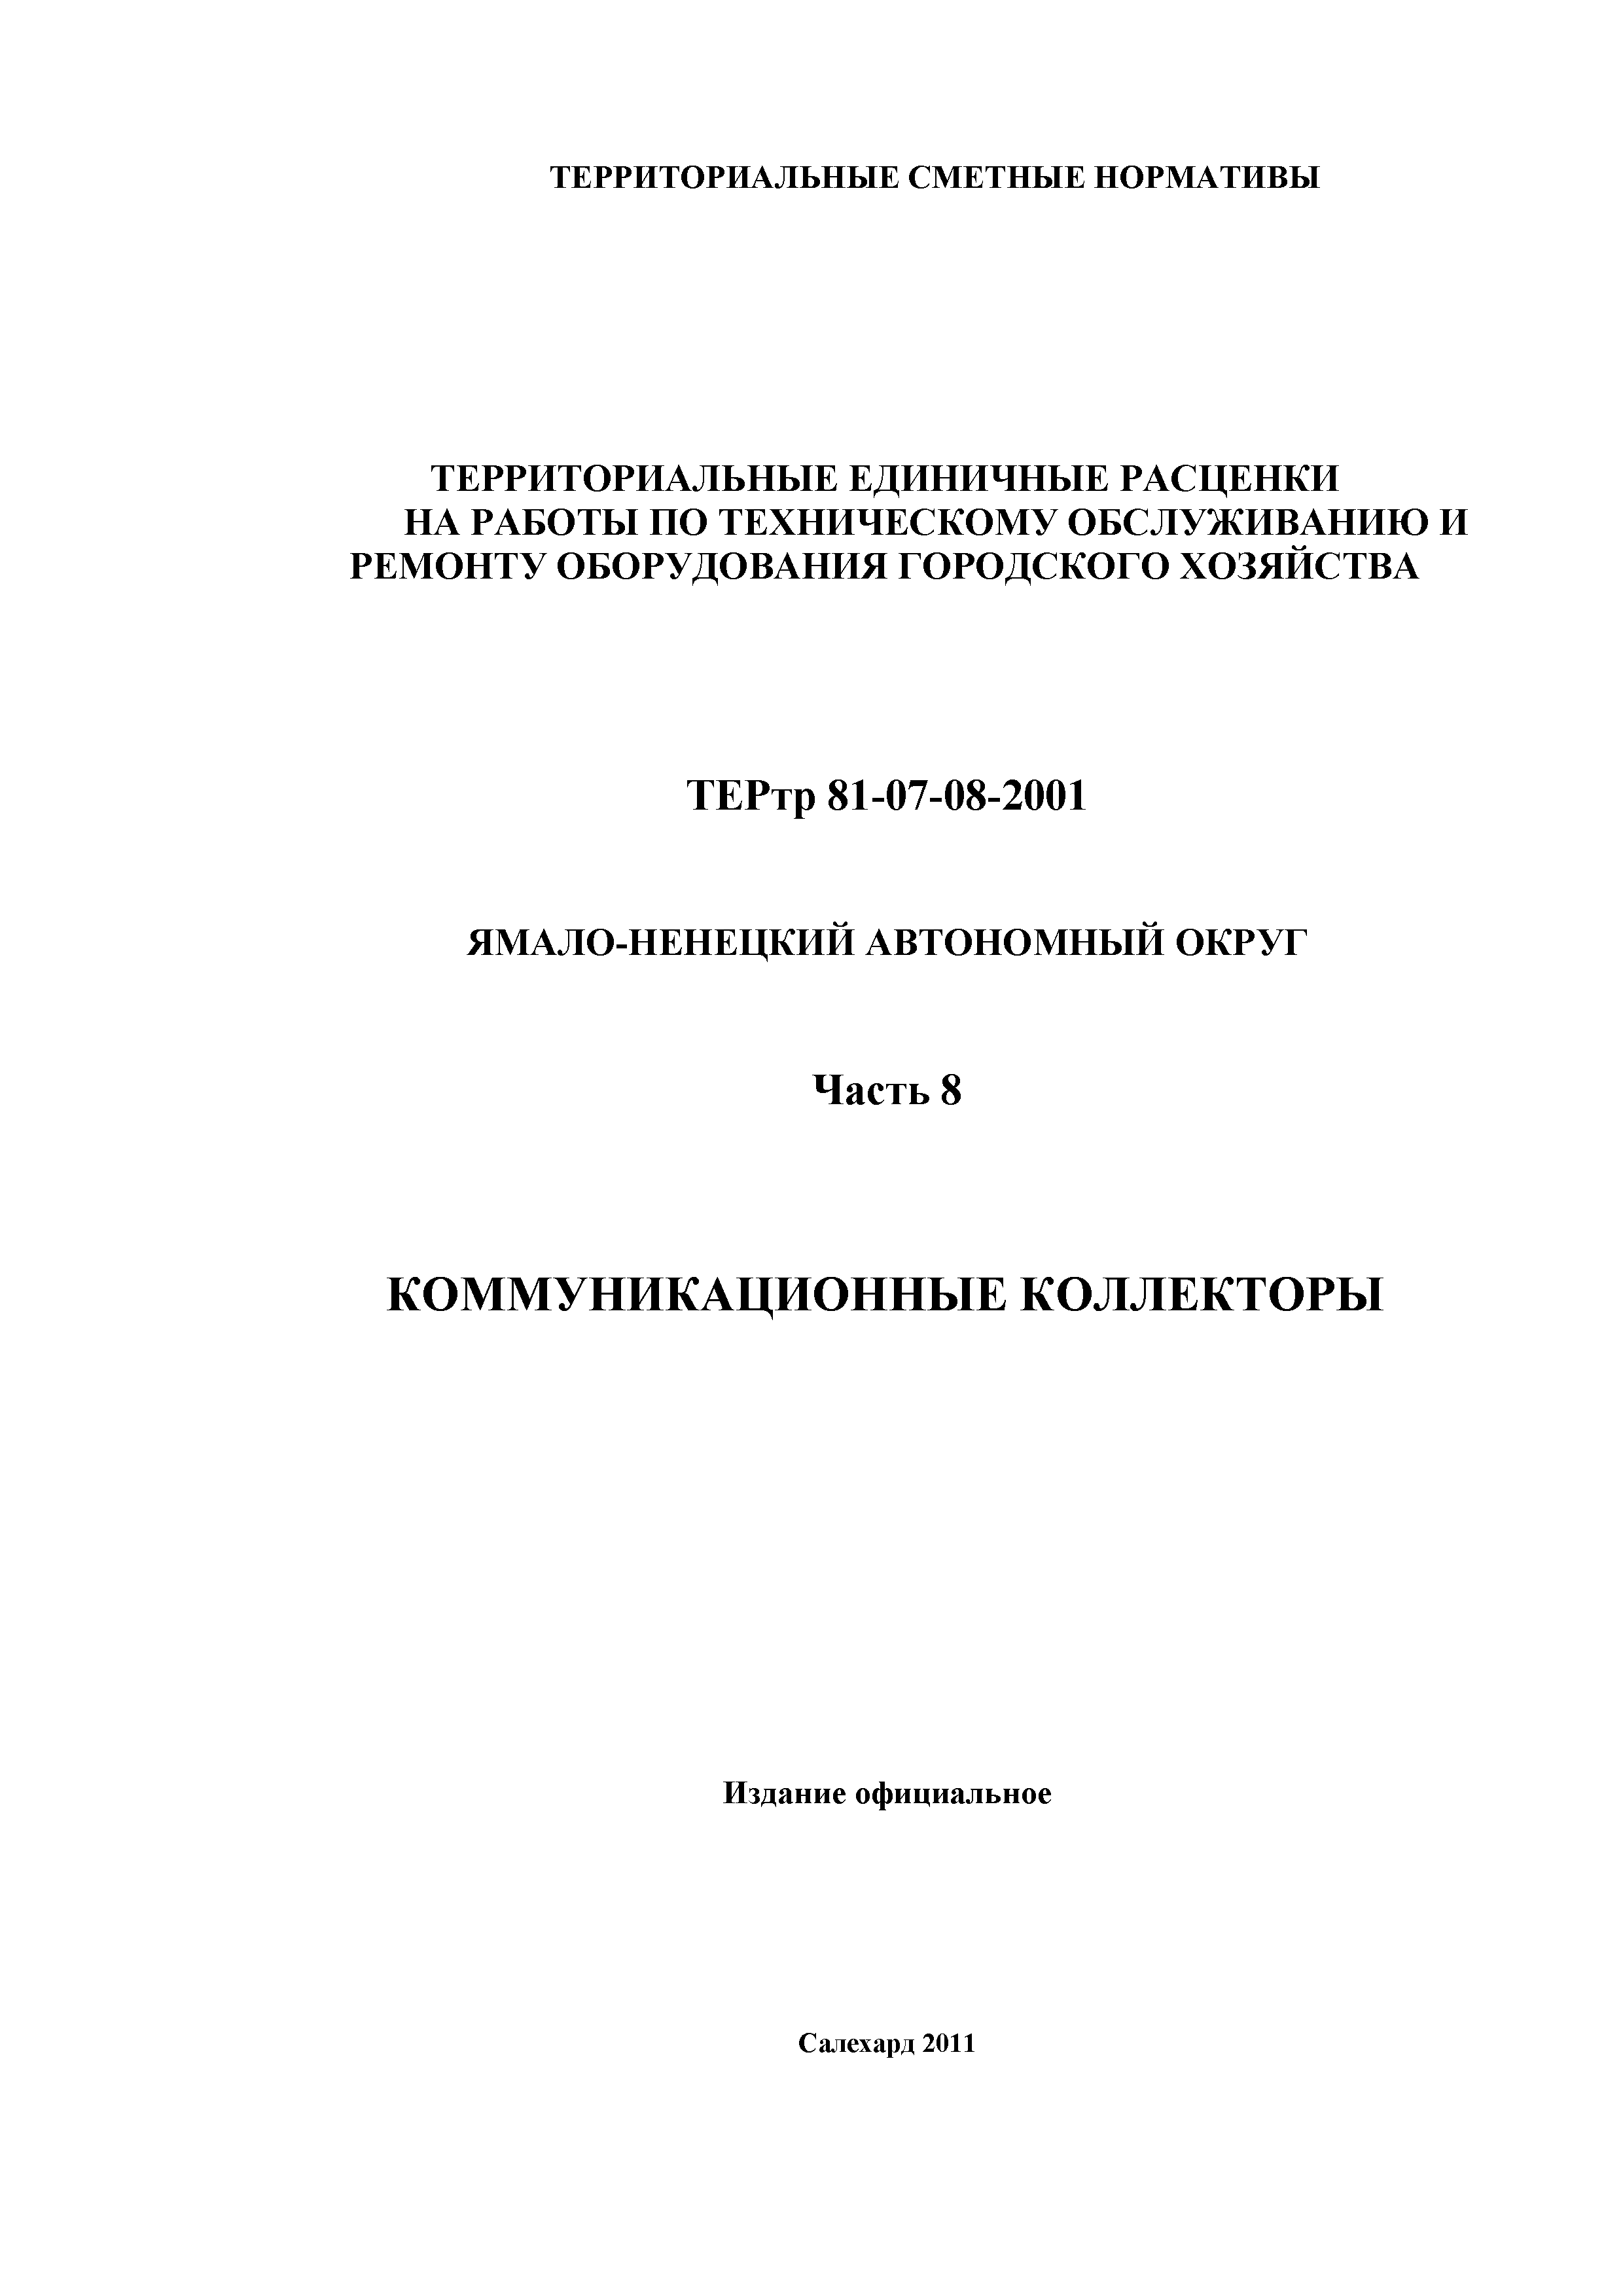 ТЕРтр Ямало-Ненецкий автономный округ 08-2001